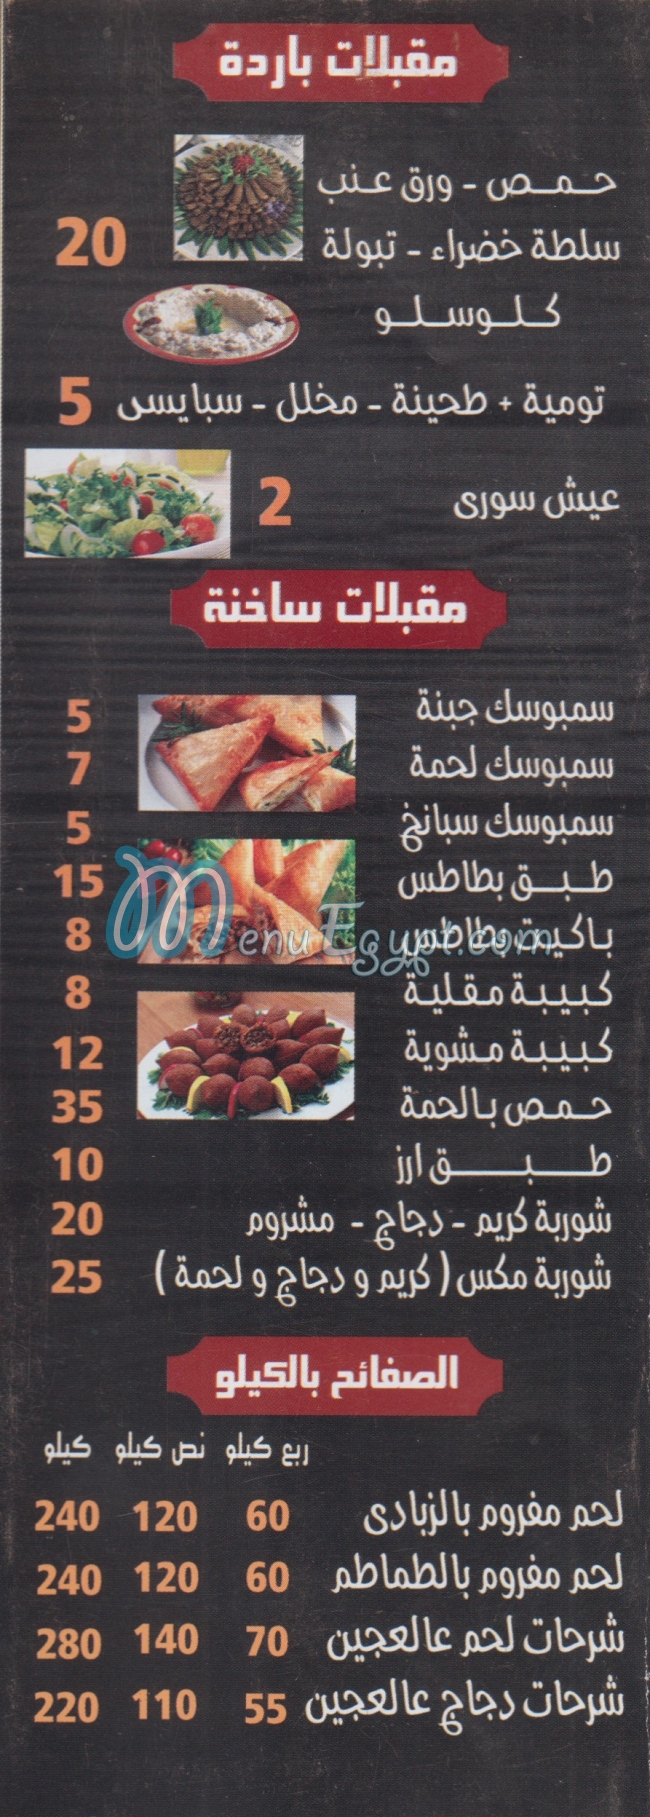 Ibn  Syria menu